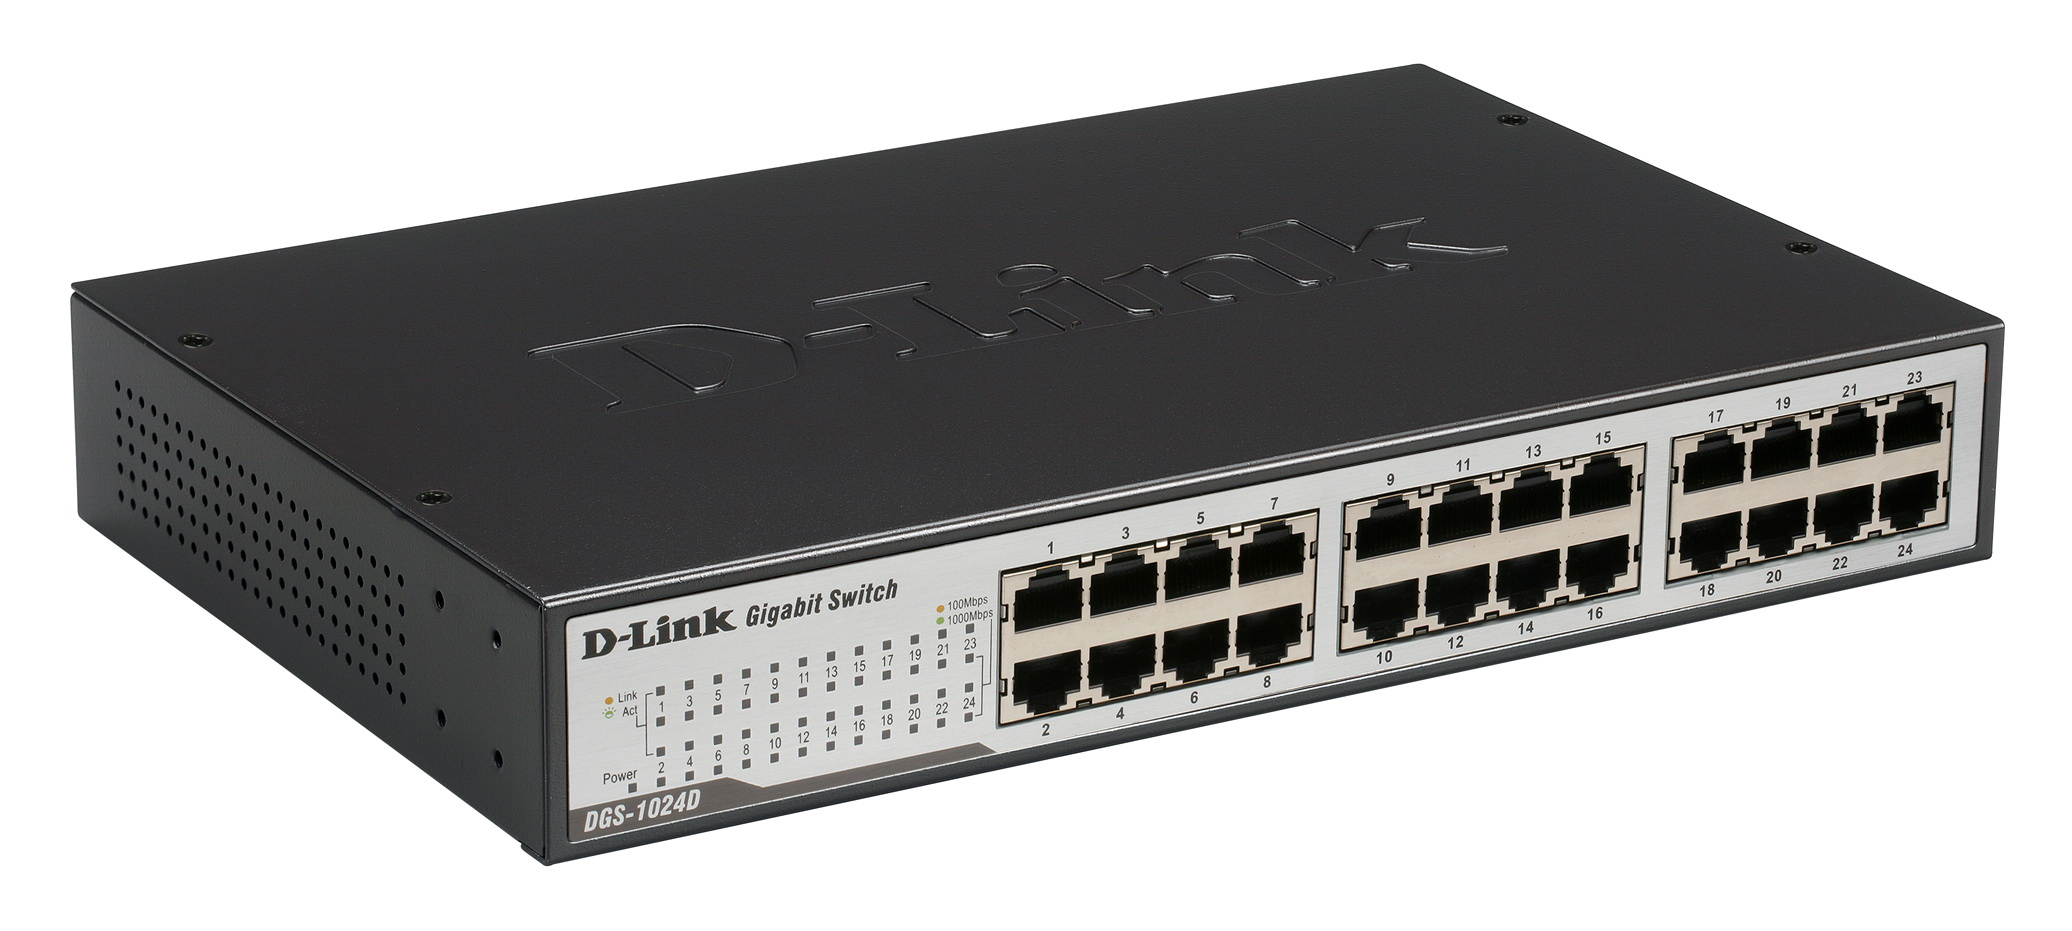 DGS-1024D D-Link 24-Ports RJ-45 10/100/1000Mbps 10/100/1000Base-T Gigabit Unmanaged Desktop Switch (Refurbished)